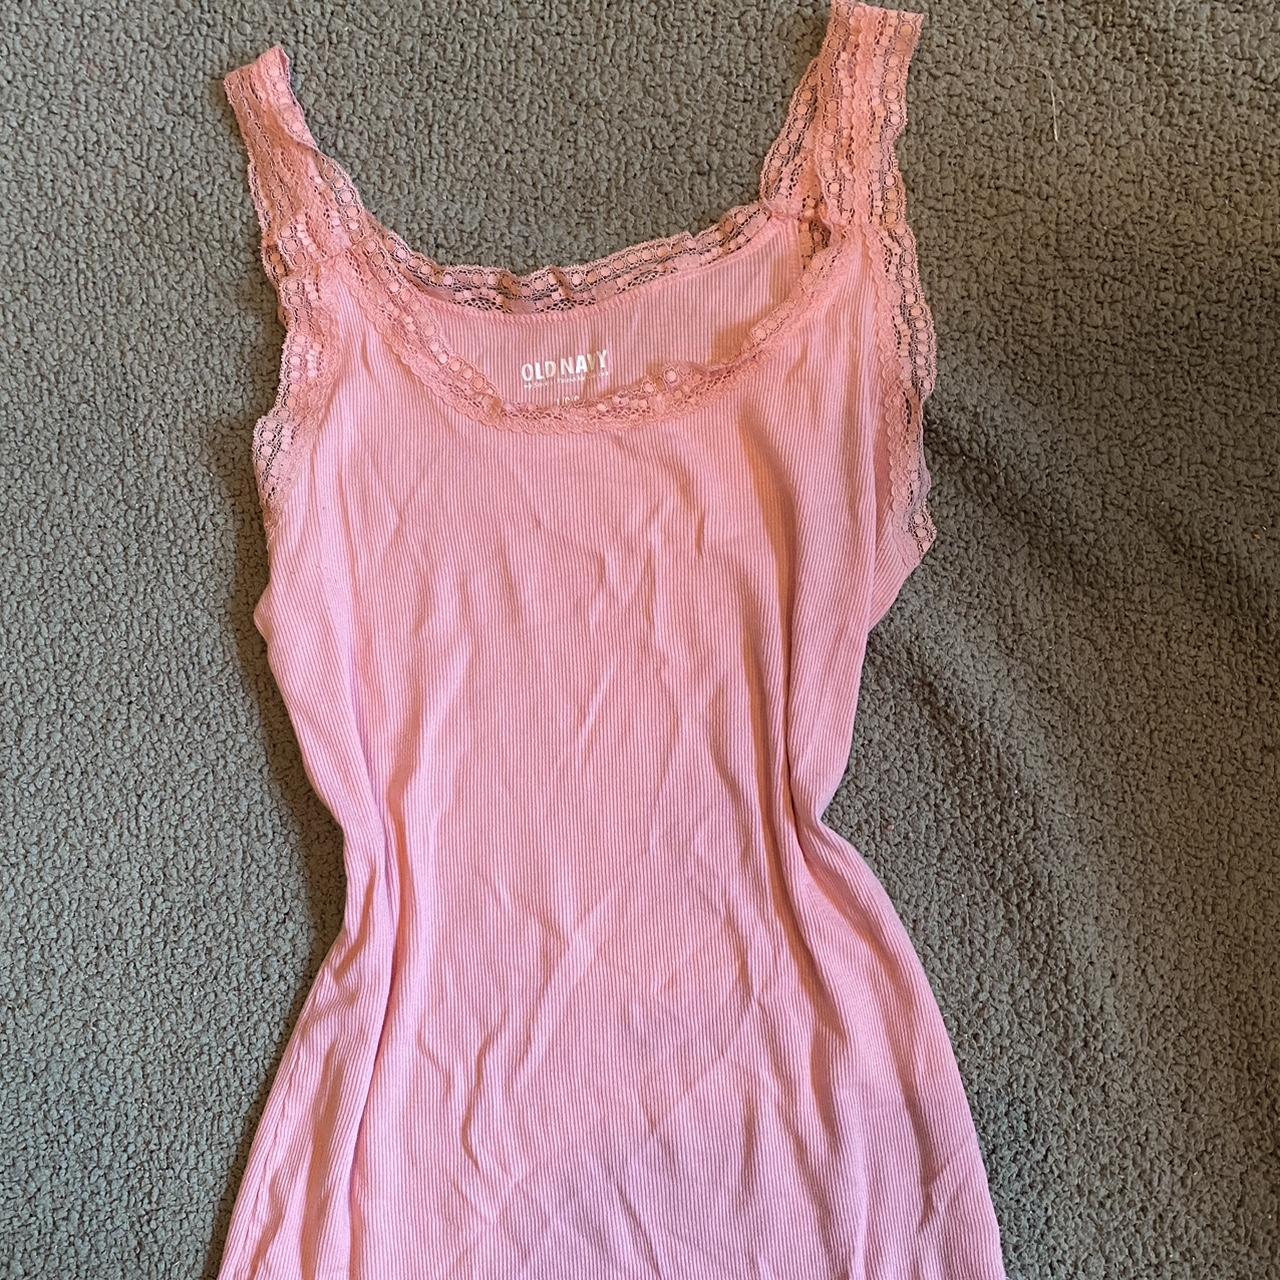 Old Navy Women's Pink Vest | Depop